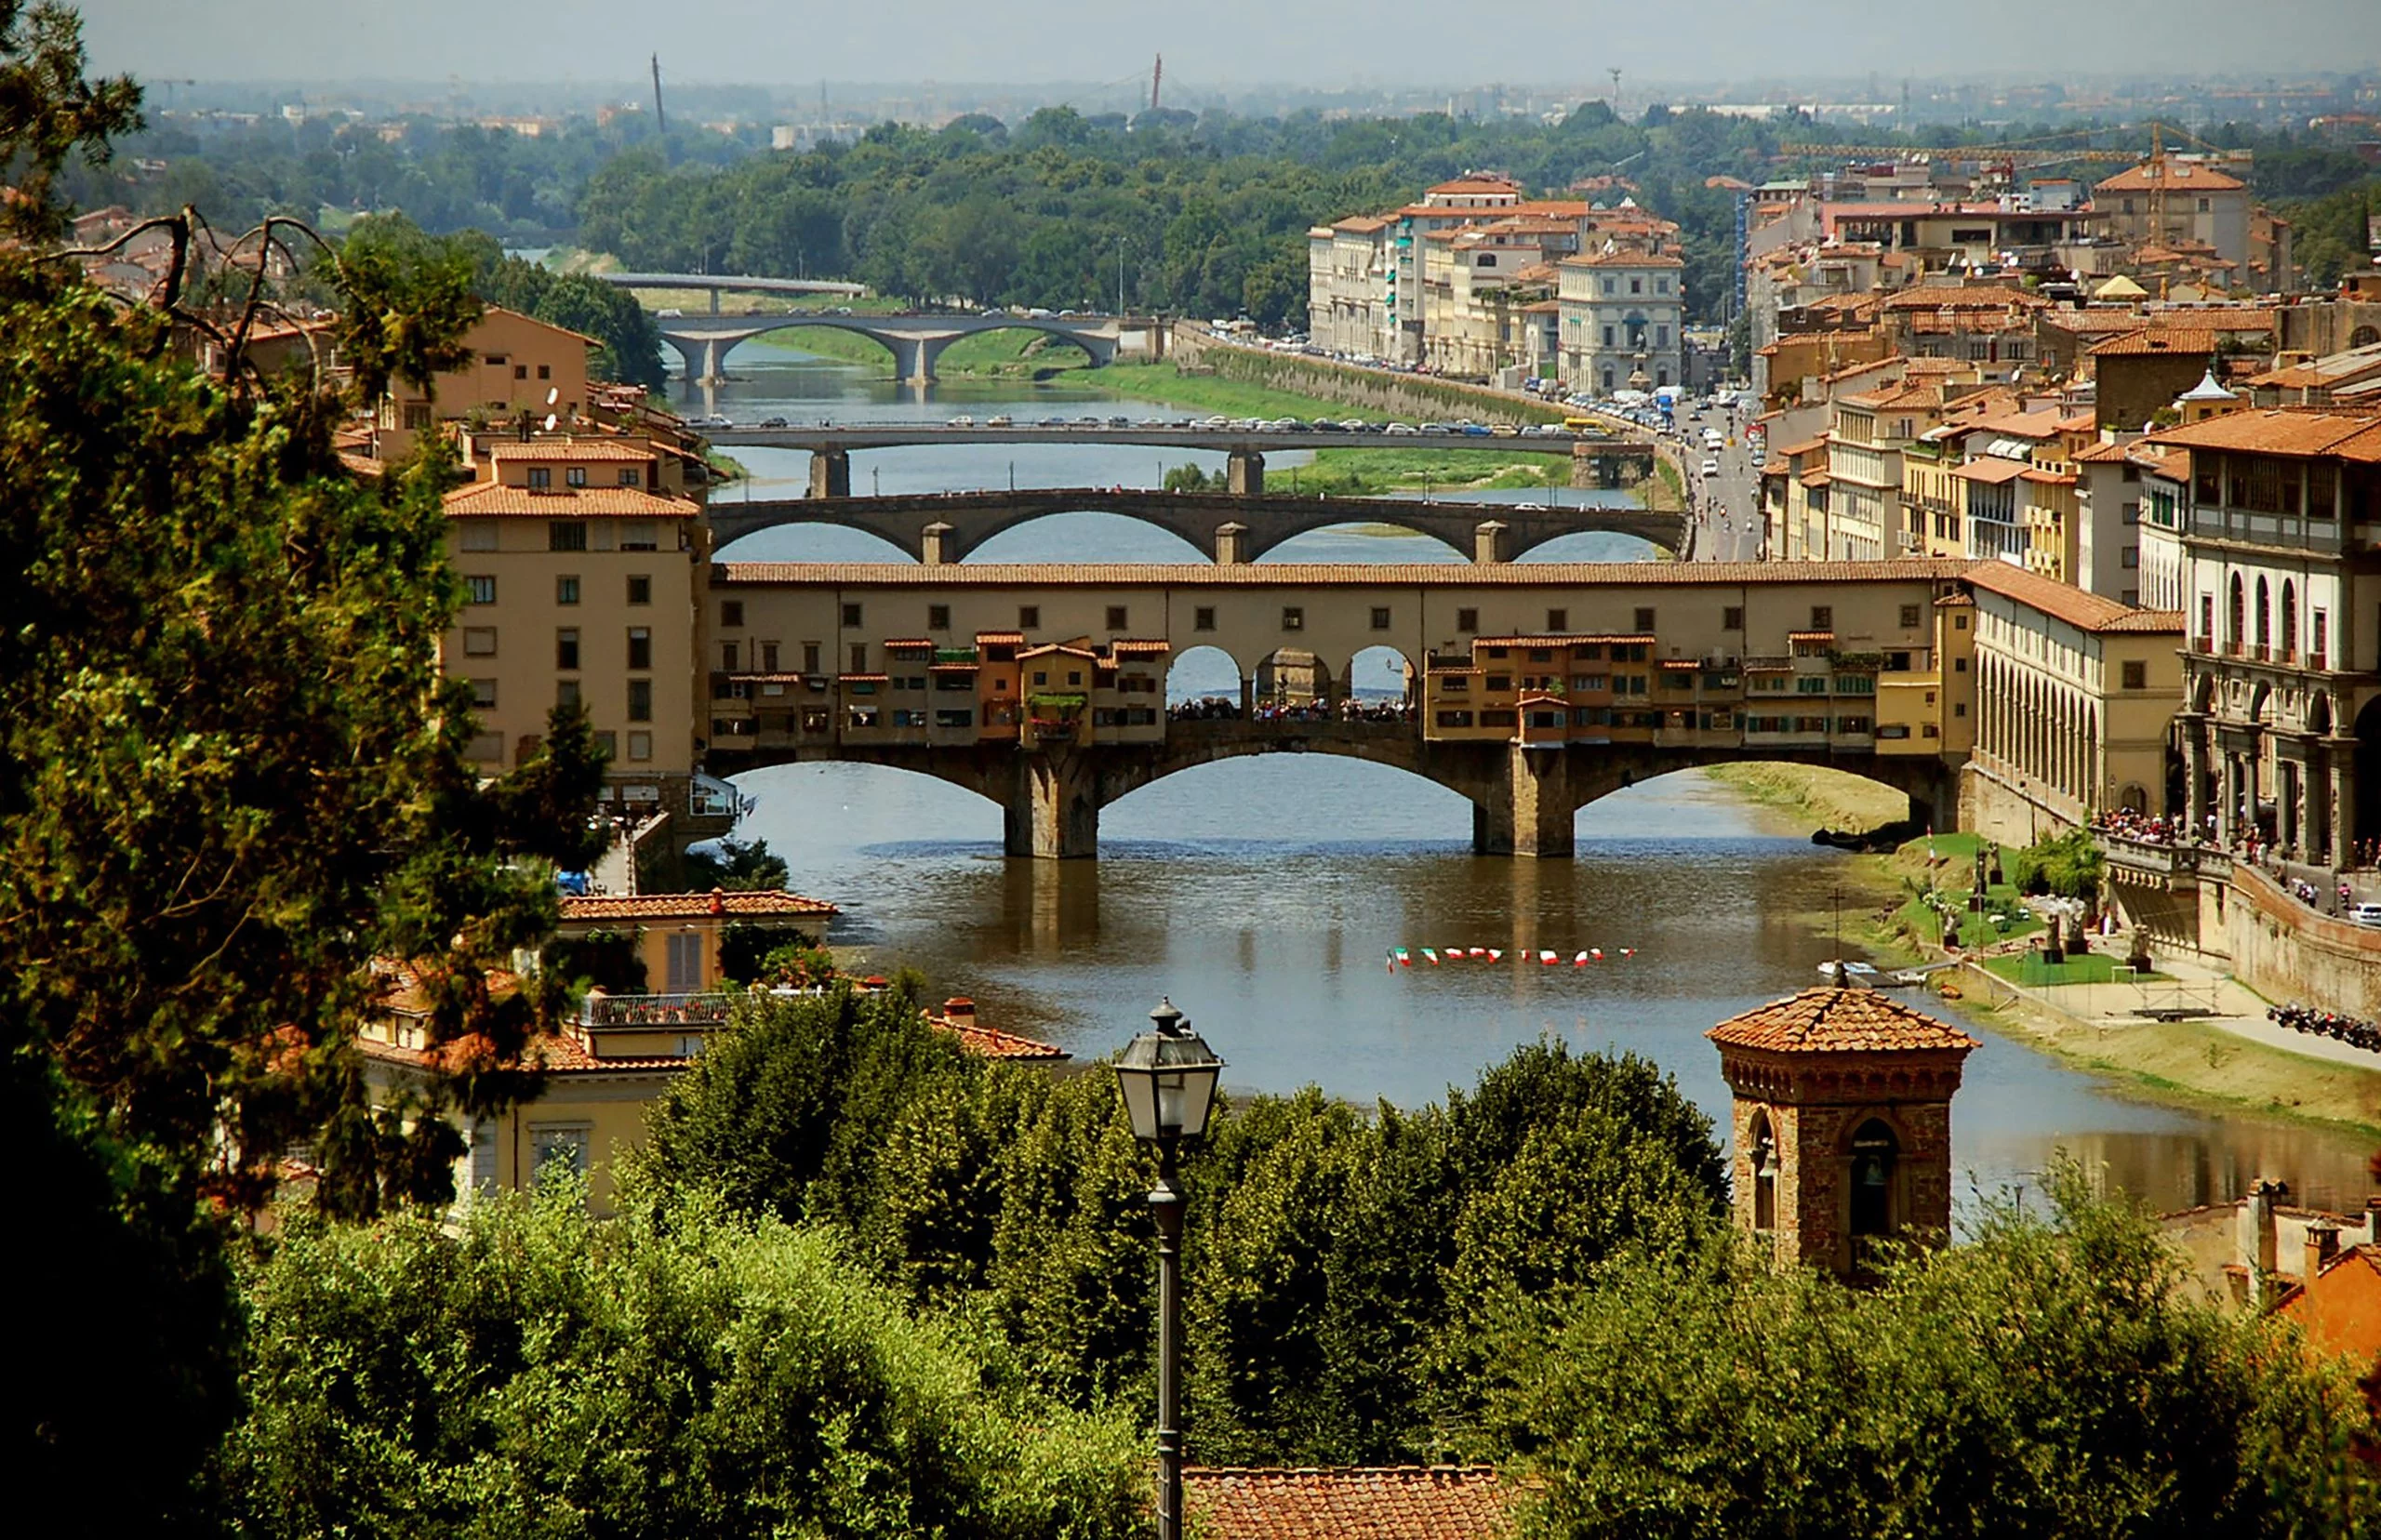 O que fazer em Florença: pontos turísticos e passeios